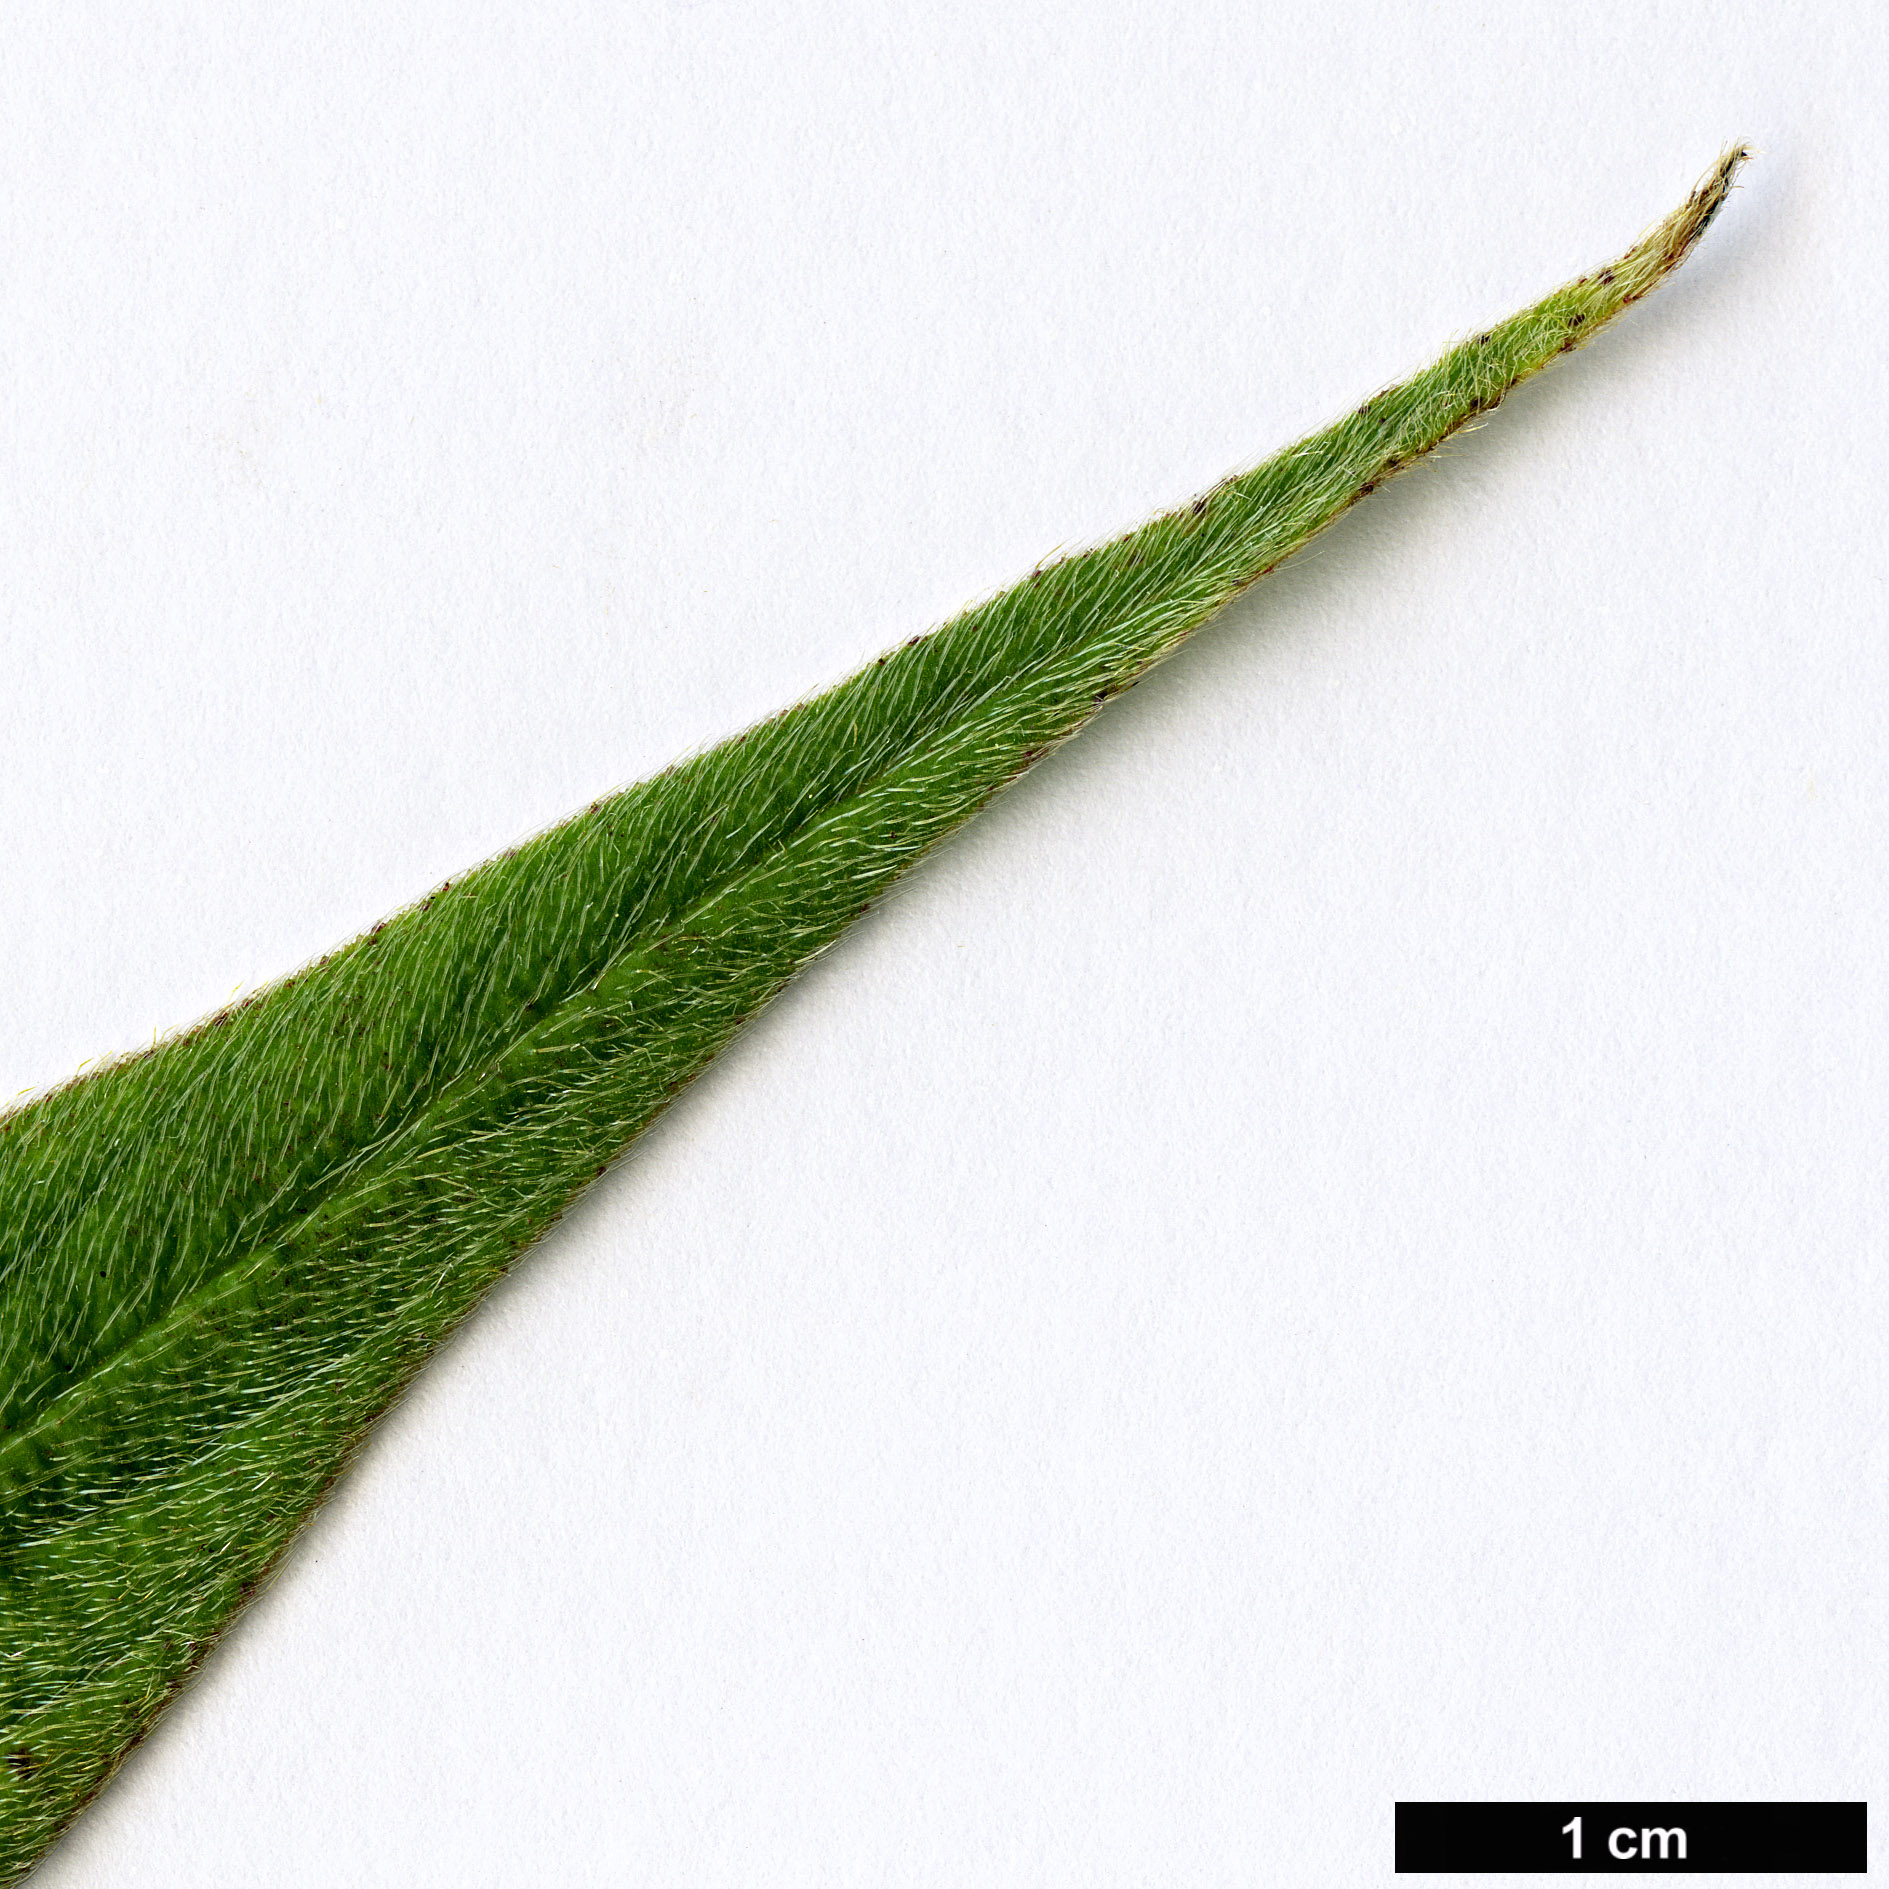 High resolution image: Family: Boraginaceae - Genus: Echium - Taxon: pininana